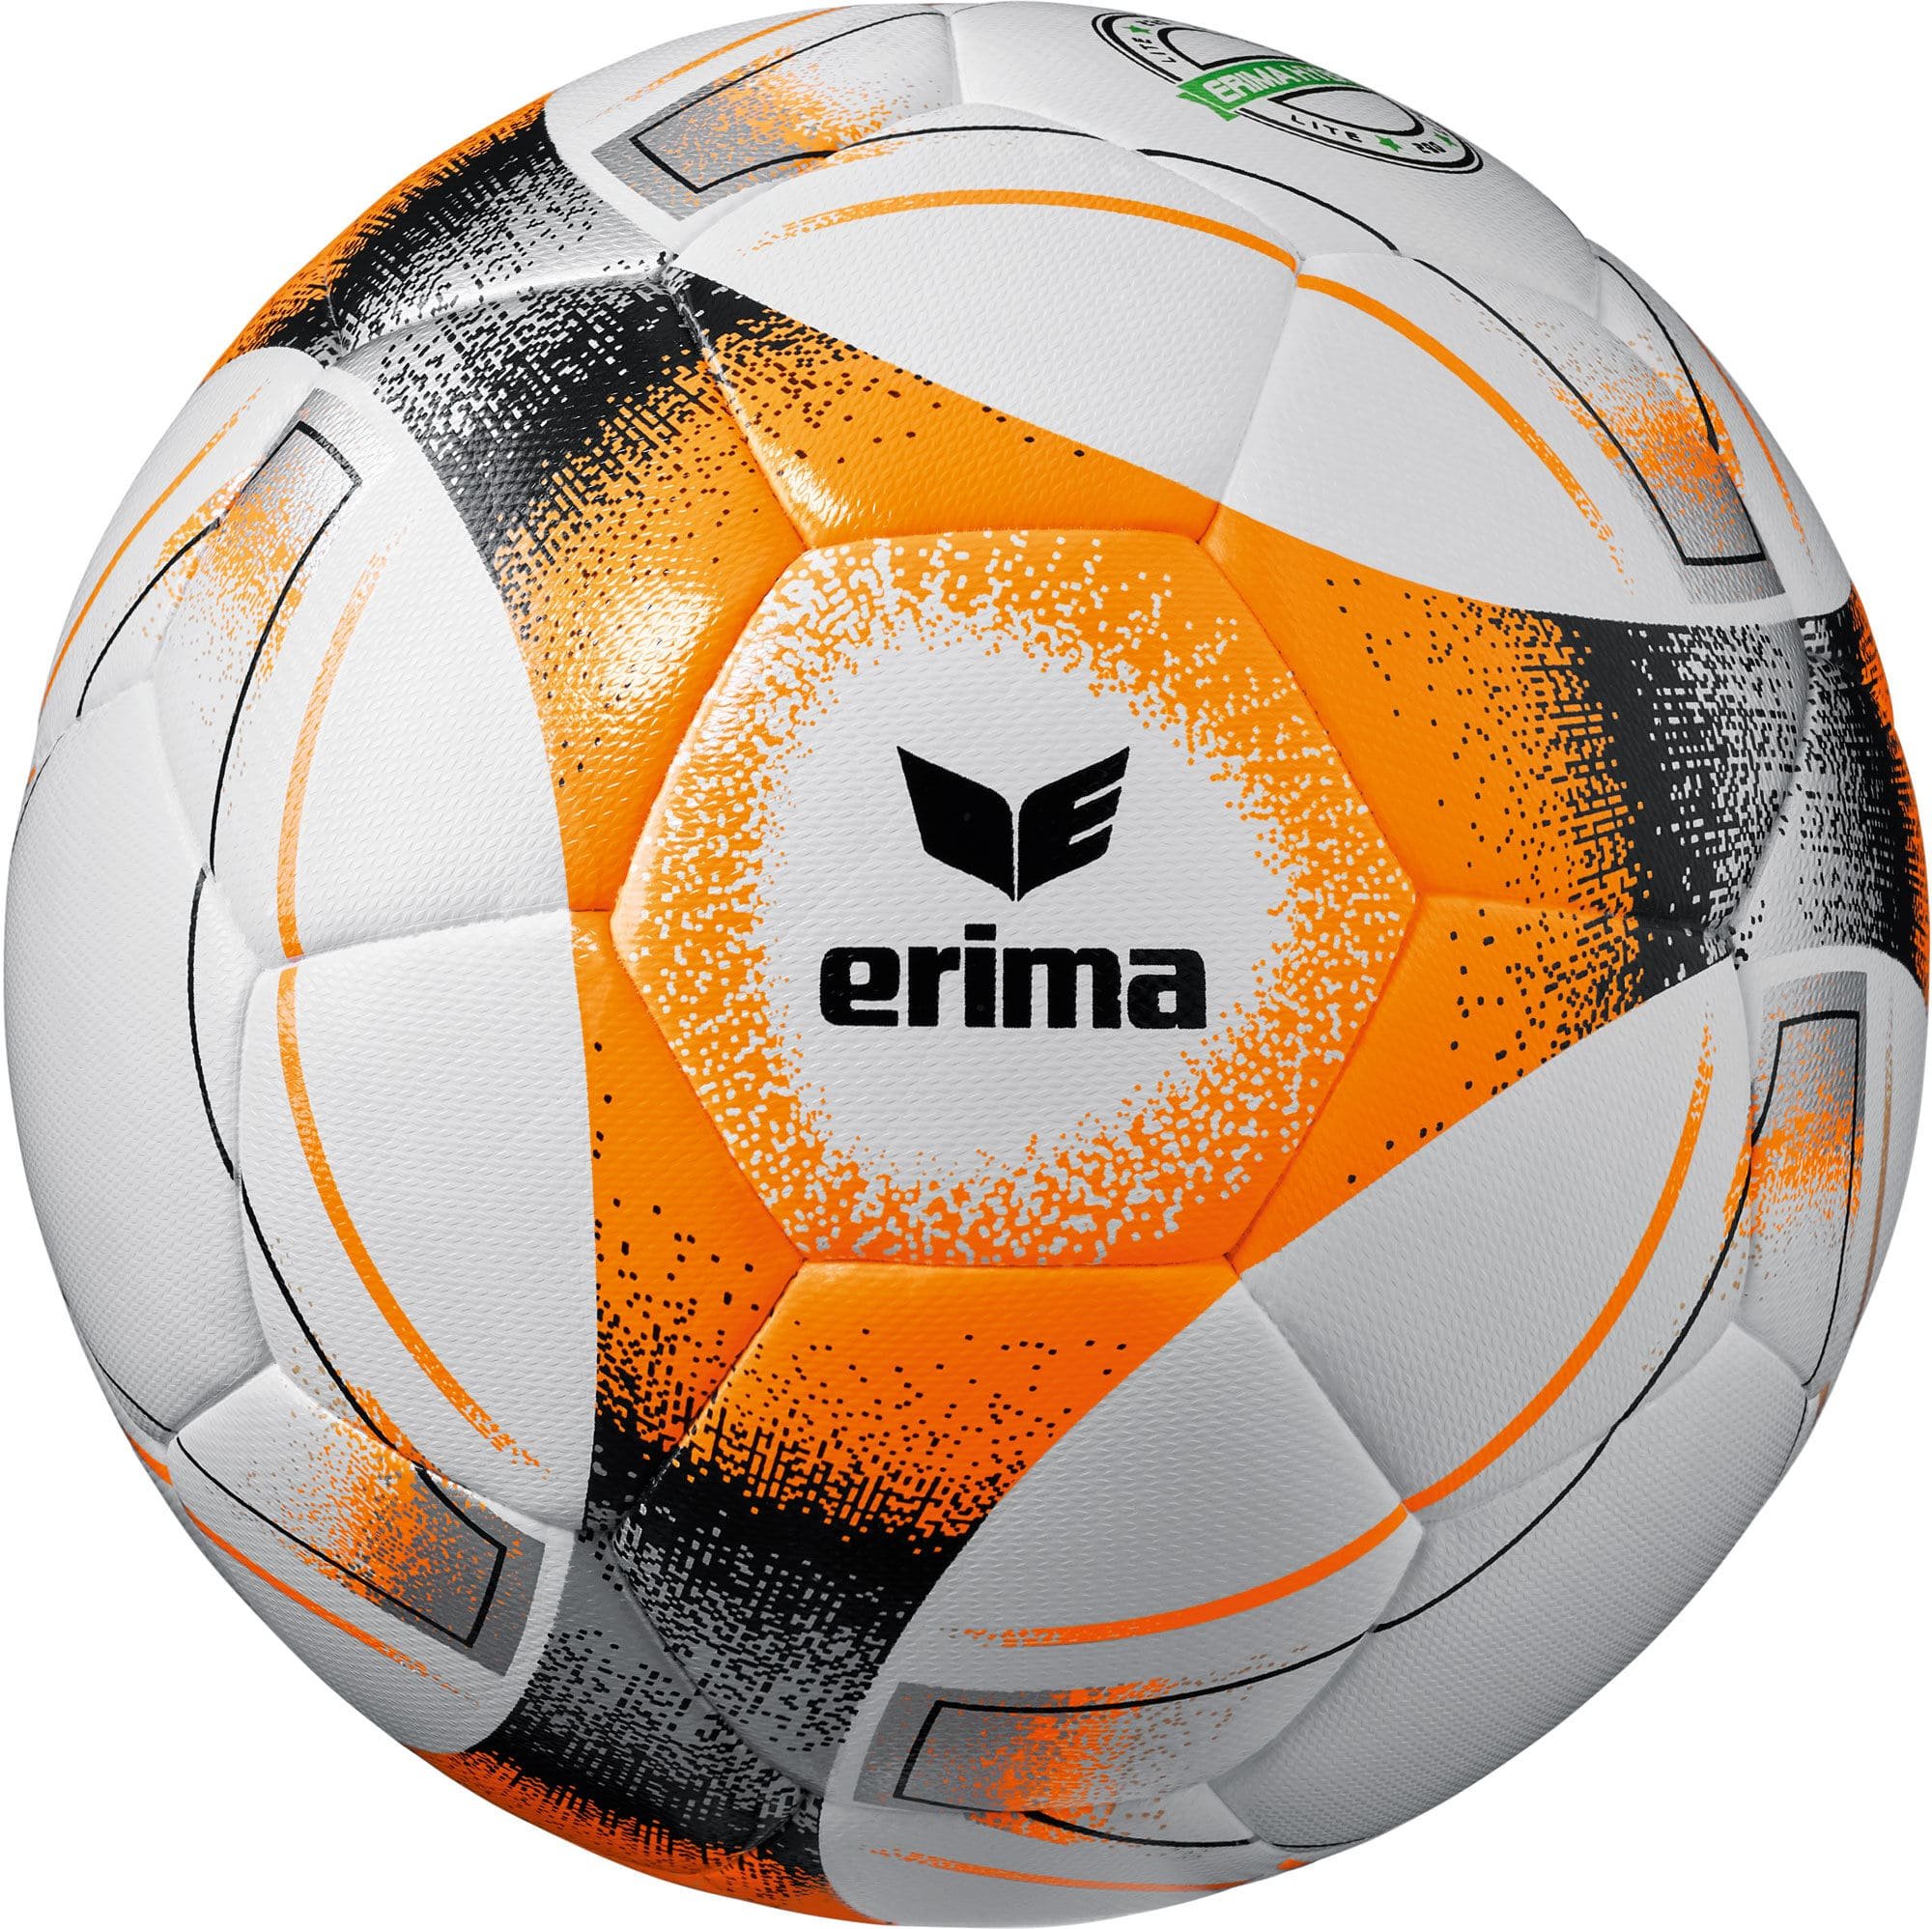 Erima Hybrid Lite 290 football